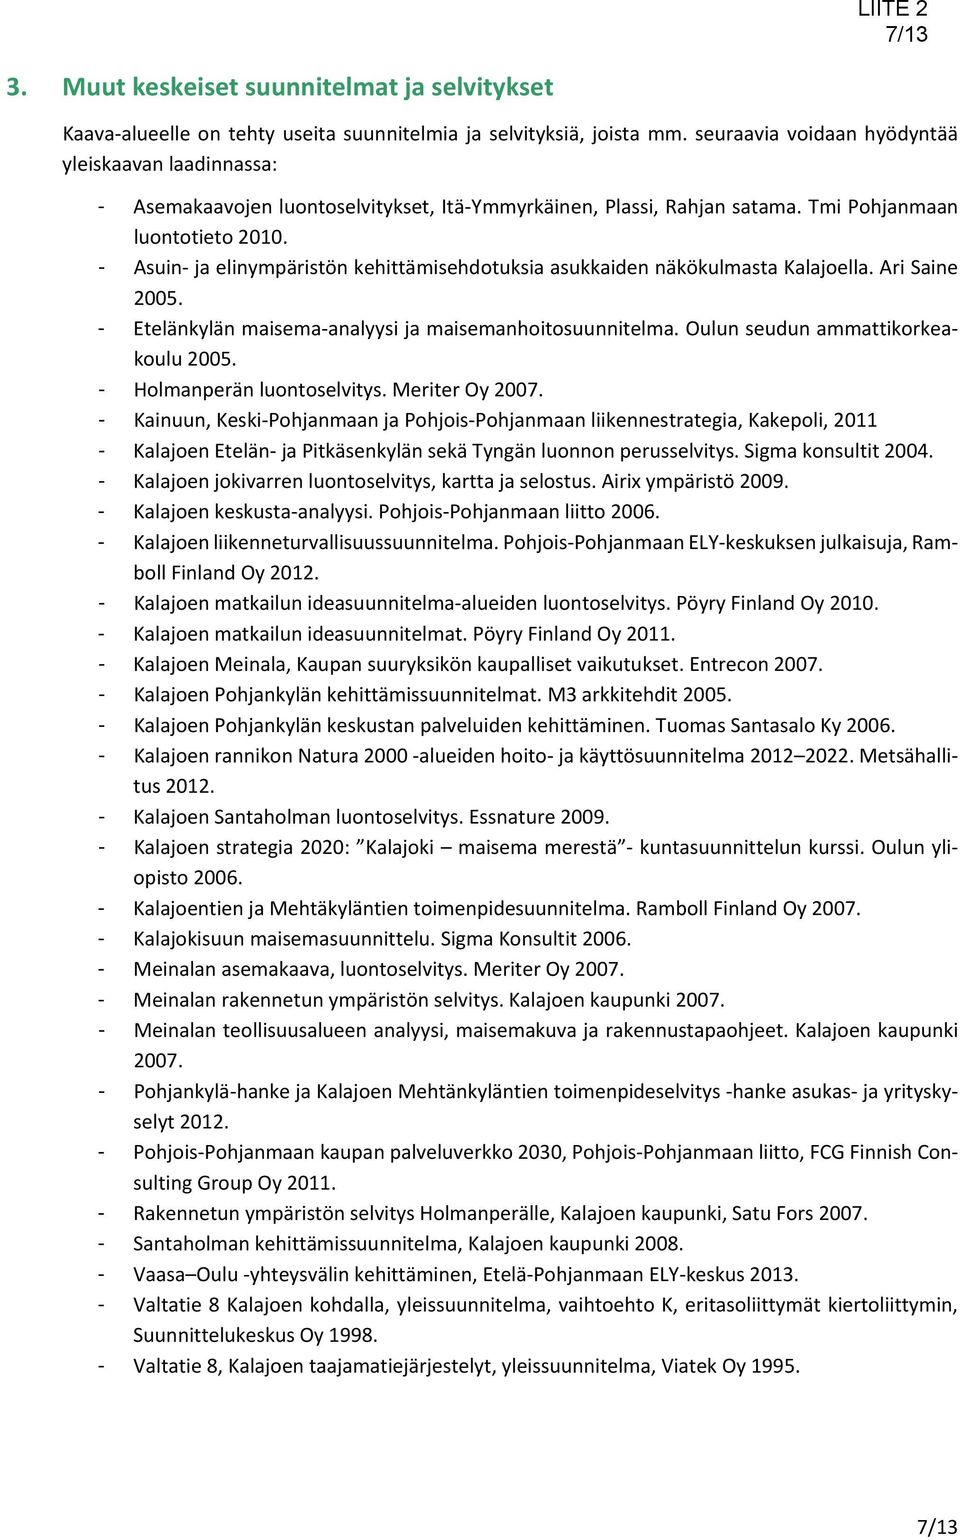 - Asuin ja elinympäristön kehittämisehdotuksia asukkaiden näkökulmasta Kalajoella. Ari Saine 2005. - Etelänkylän maisema analyysi ja maisemanhoitosuunnitelma. Oulun seudun ammattikorkeakoulu 2005.